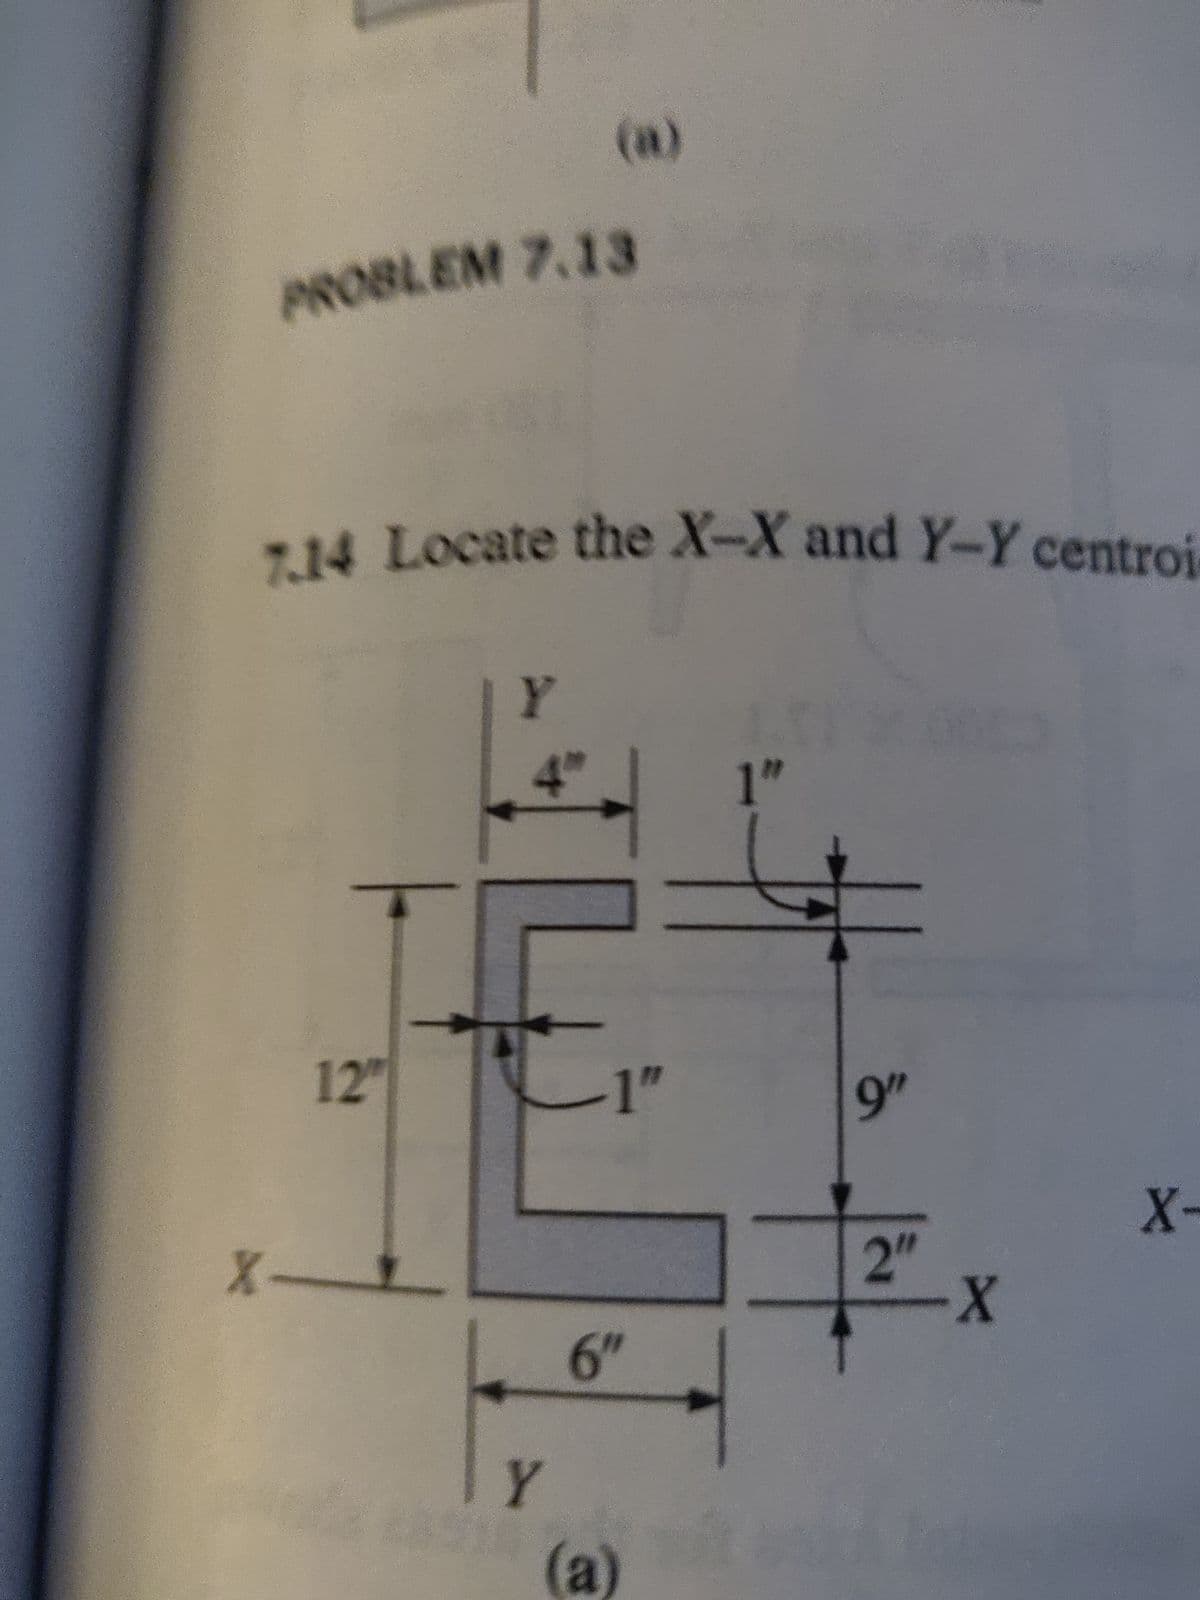 PROBLEM 7.13
7.14 Locate the X-X and Y-Y centroi-
X-
12"
Y
4"
Y
-1"
6″
(a)
1"
9"
2"
X
X-